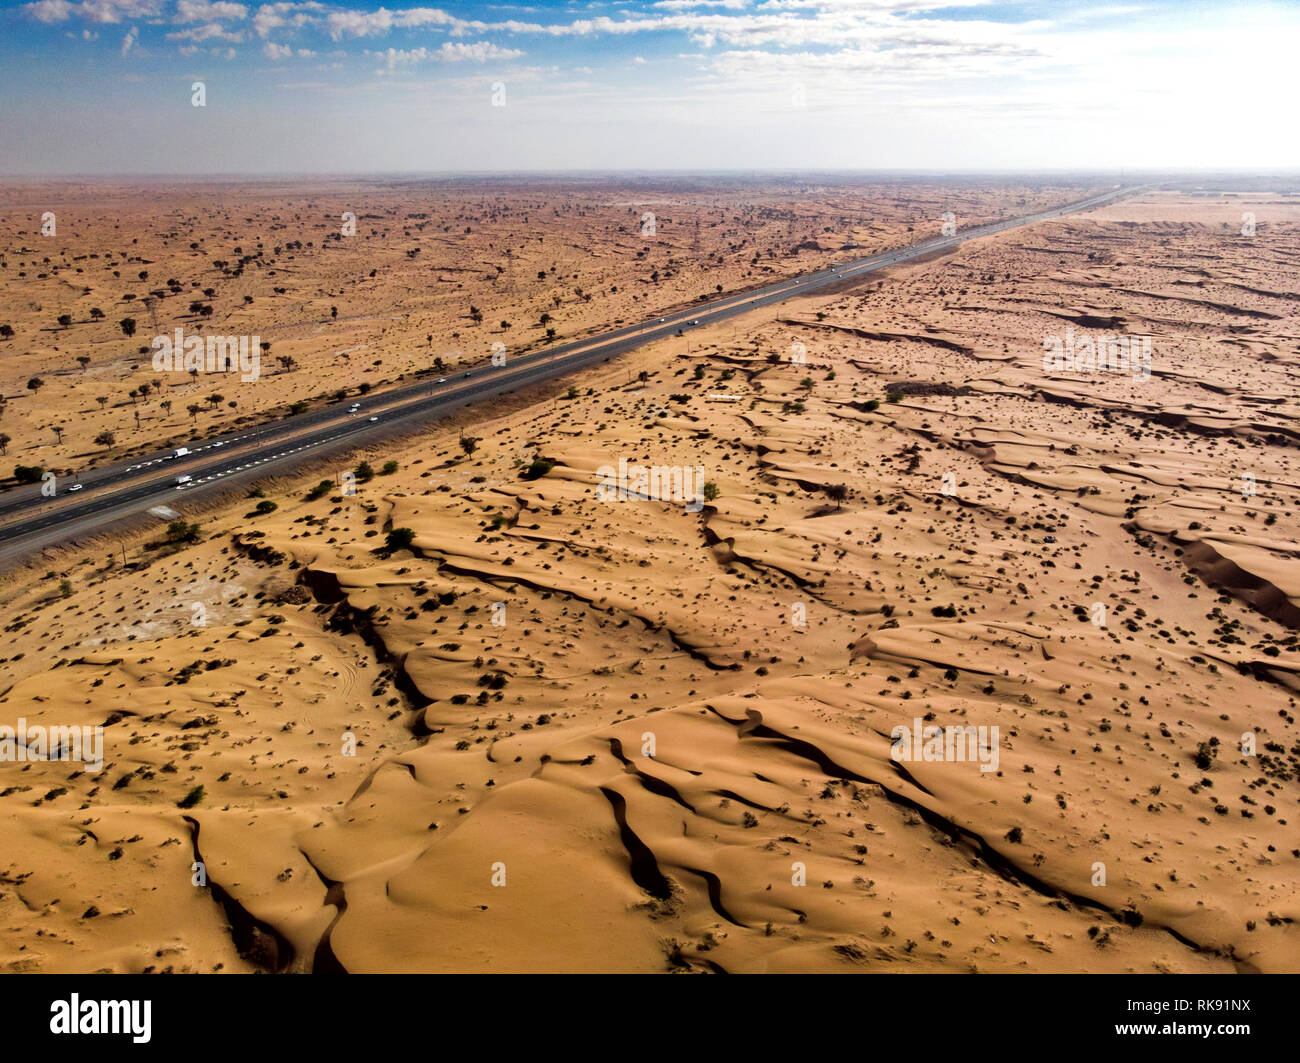 El paisaje desierto atravesado por una carretera vista aérea Foto de stock